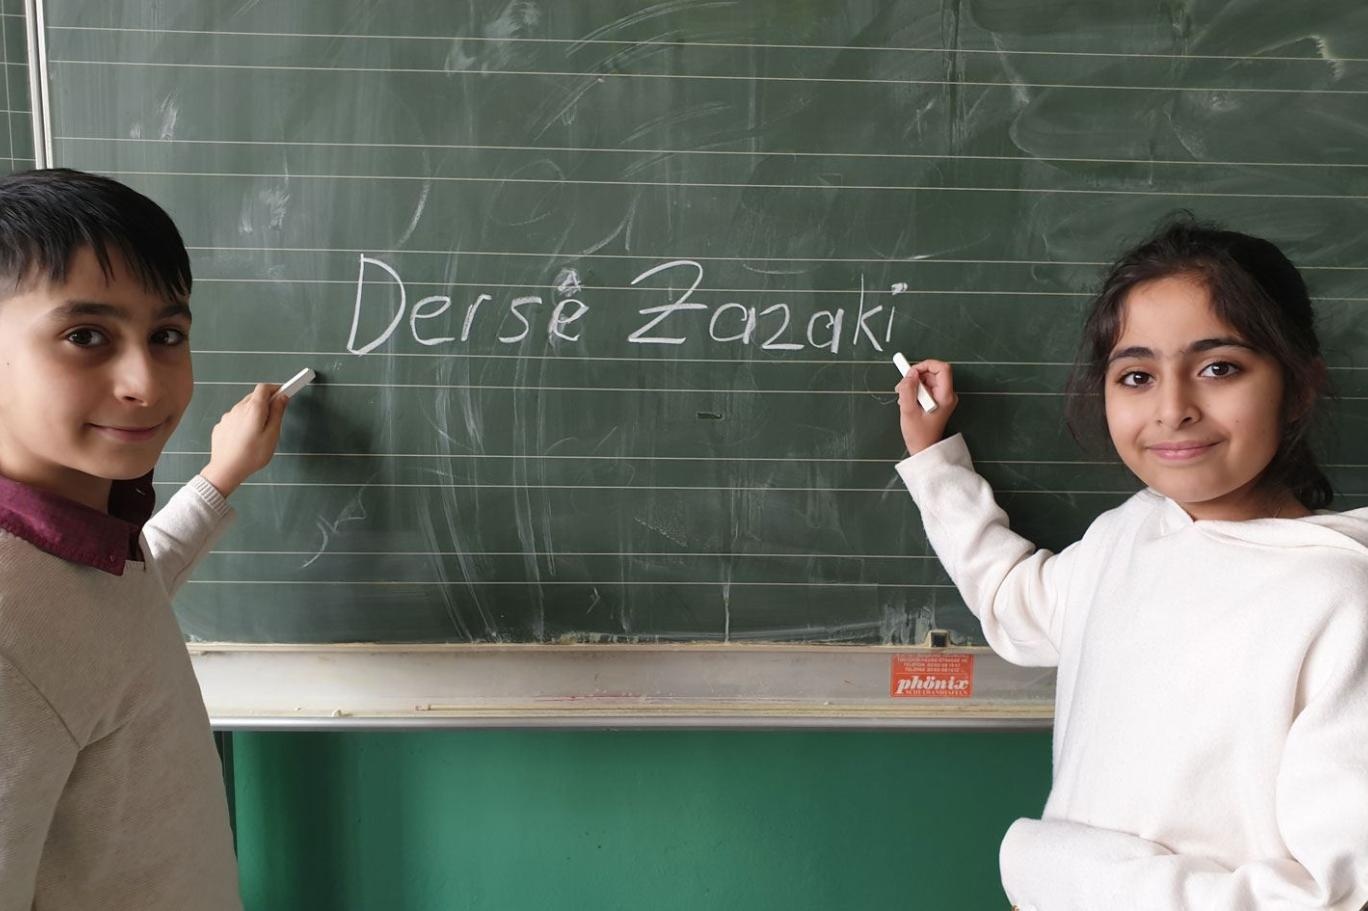 آموزش زبان زازا در انجمن های درسیم برای زنده نگه داشتن این زبان کافی نیست/ممنوعیت آموزش زبان باید برداشته شود